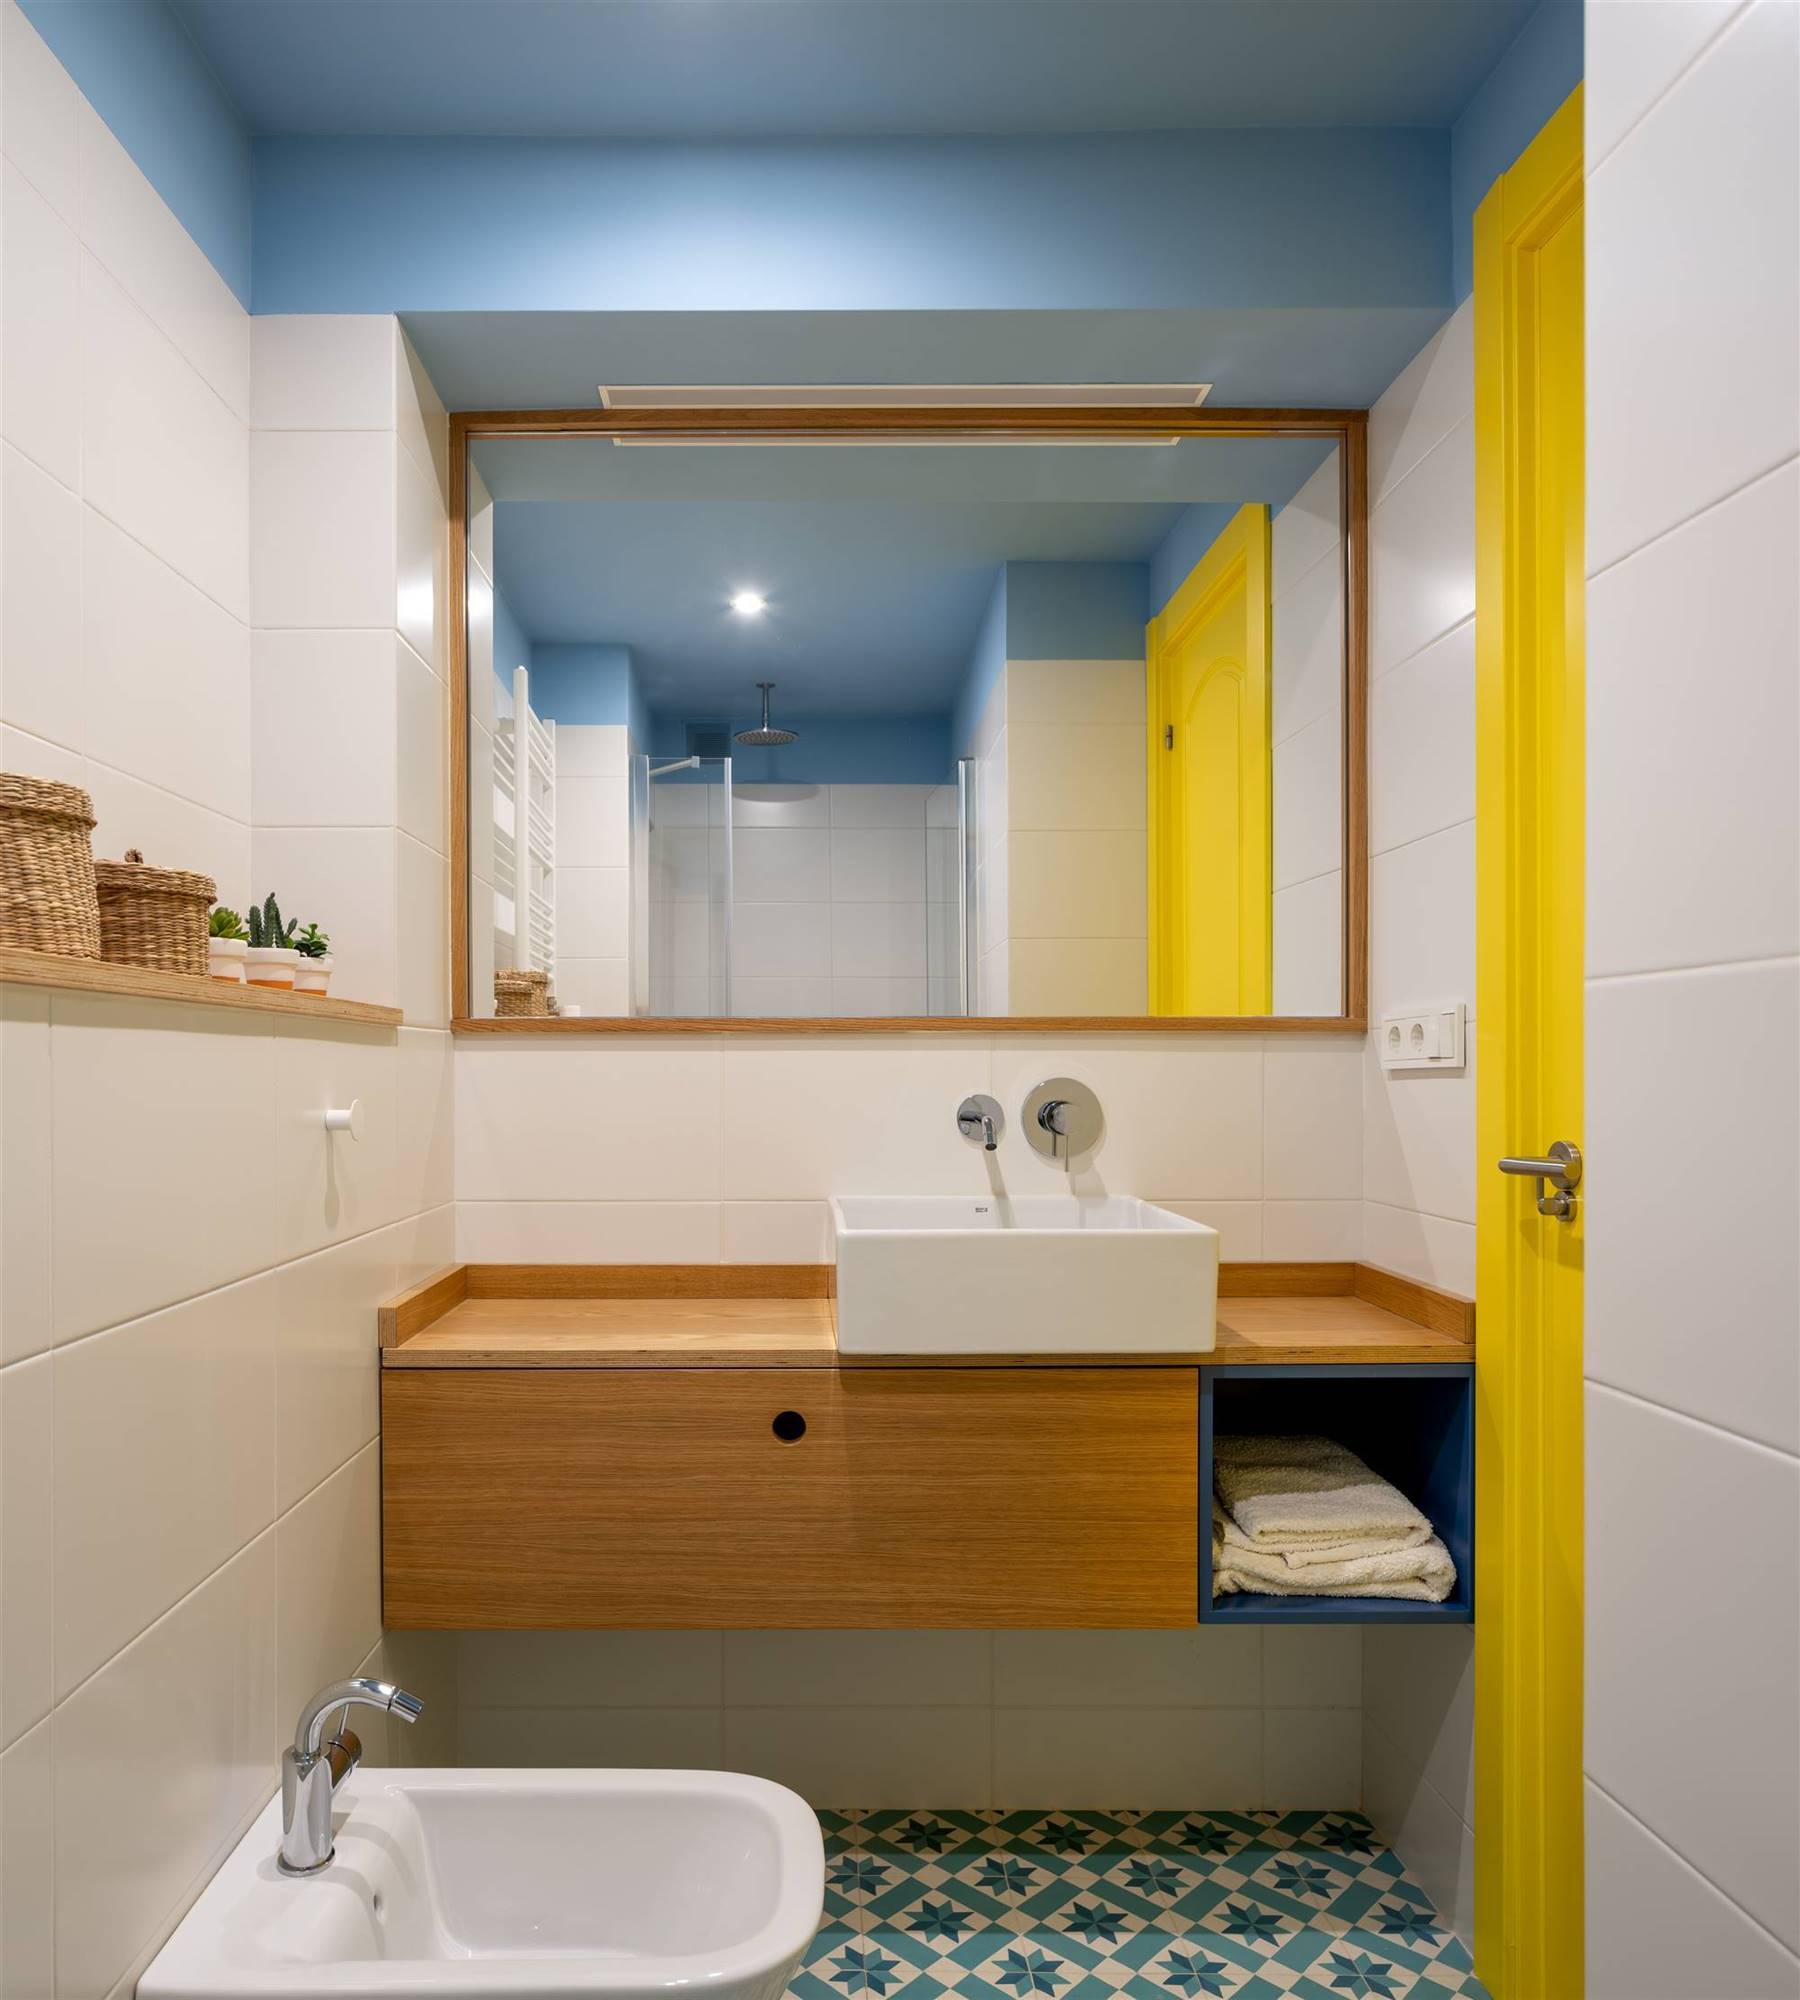 Un baño moderno de diseño tras la reforma de Hiriko Estudio.